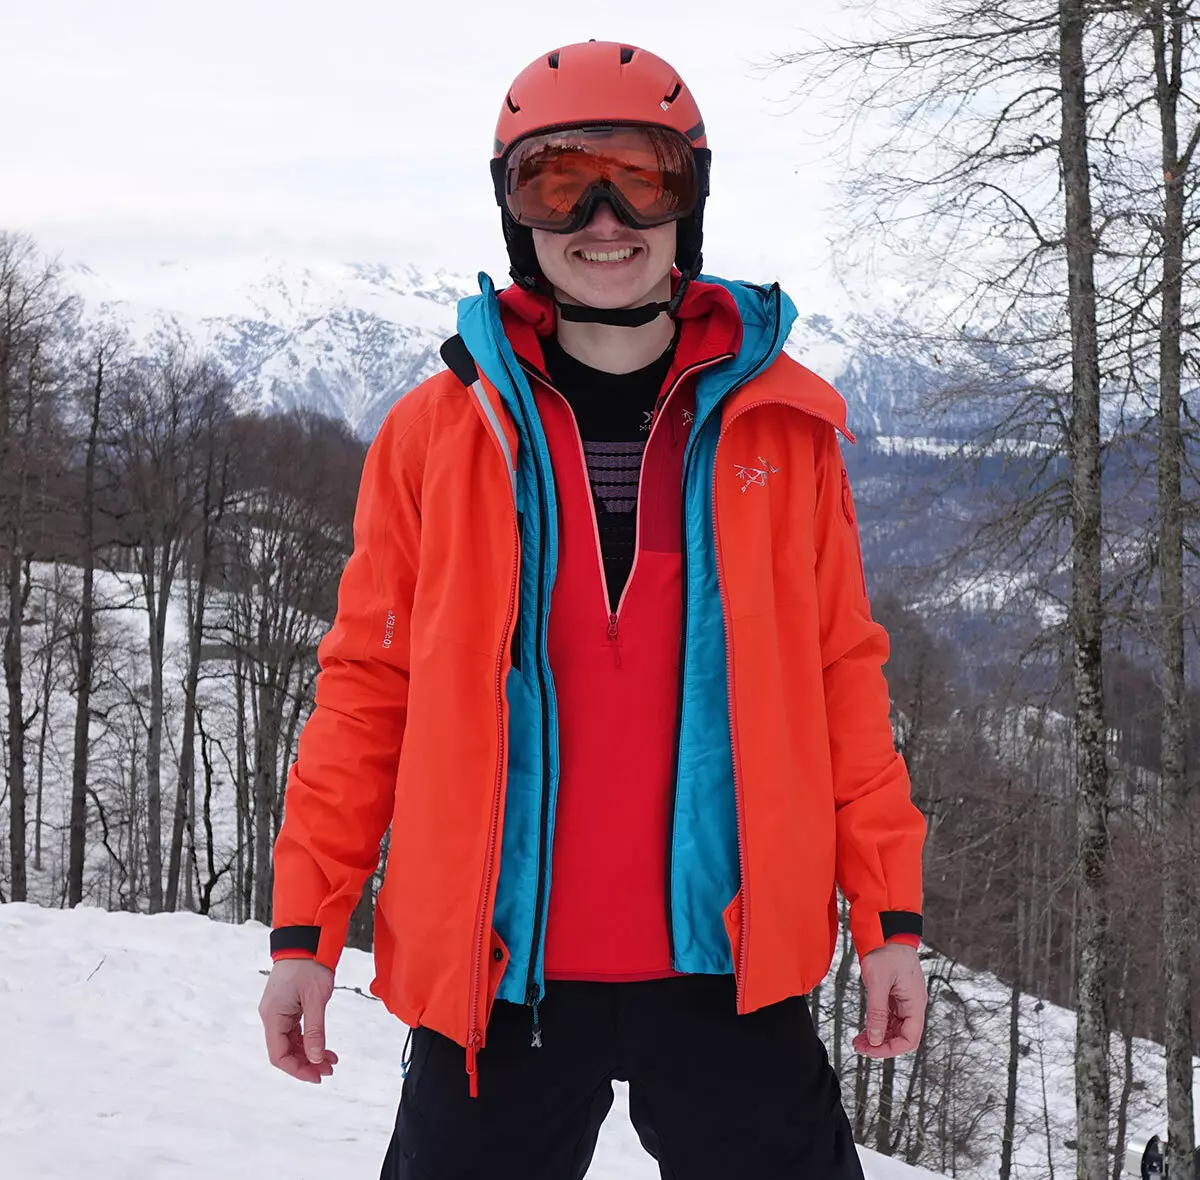 ژاکت اسکی: ژاکت زمستانی زنان برای اسکی روی زمین، ژاکت های بازرگانی کودکان گرم و بزرگسالان. چگونه برای اسکیت انتخاب کنید؟ 20201_6